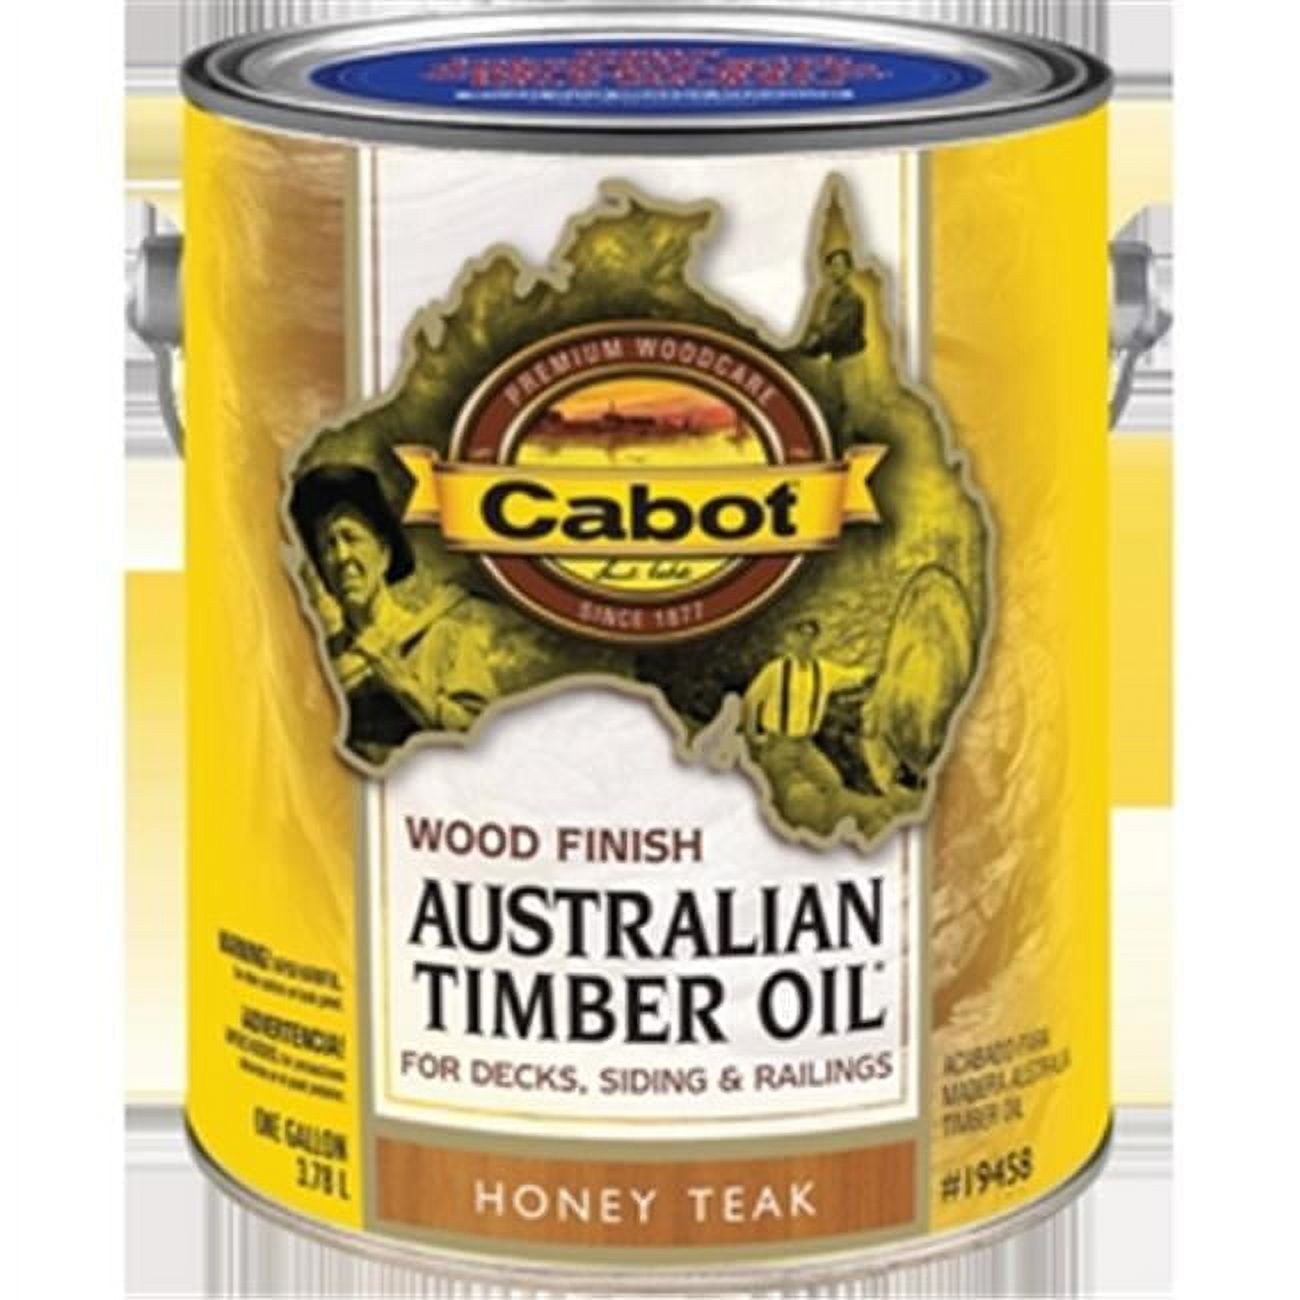 Cabot Australian Timber Oil Translucent Exterior Oil Finish, 3458 Honey Teak,  1 Qt. - Clark Devon Hardware